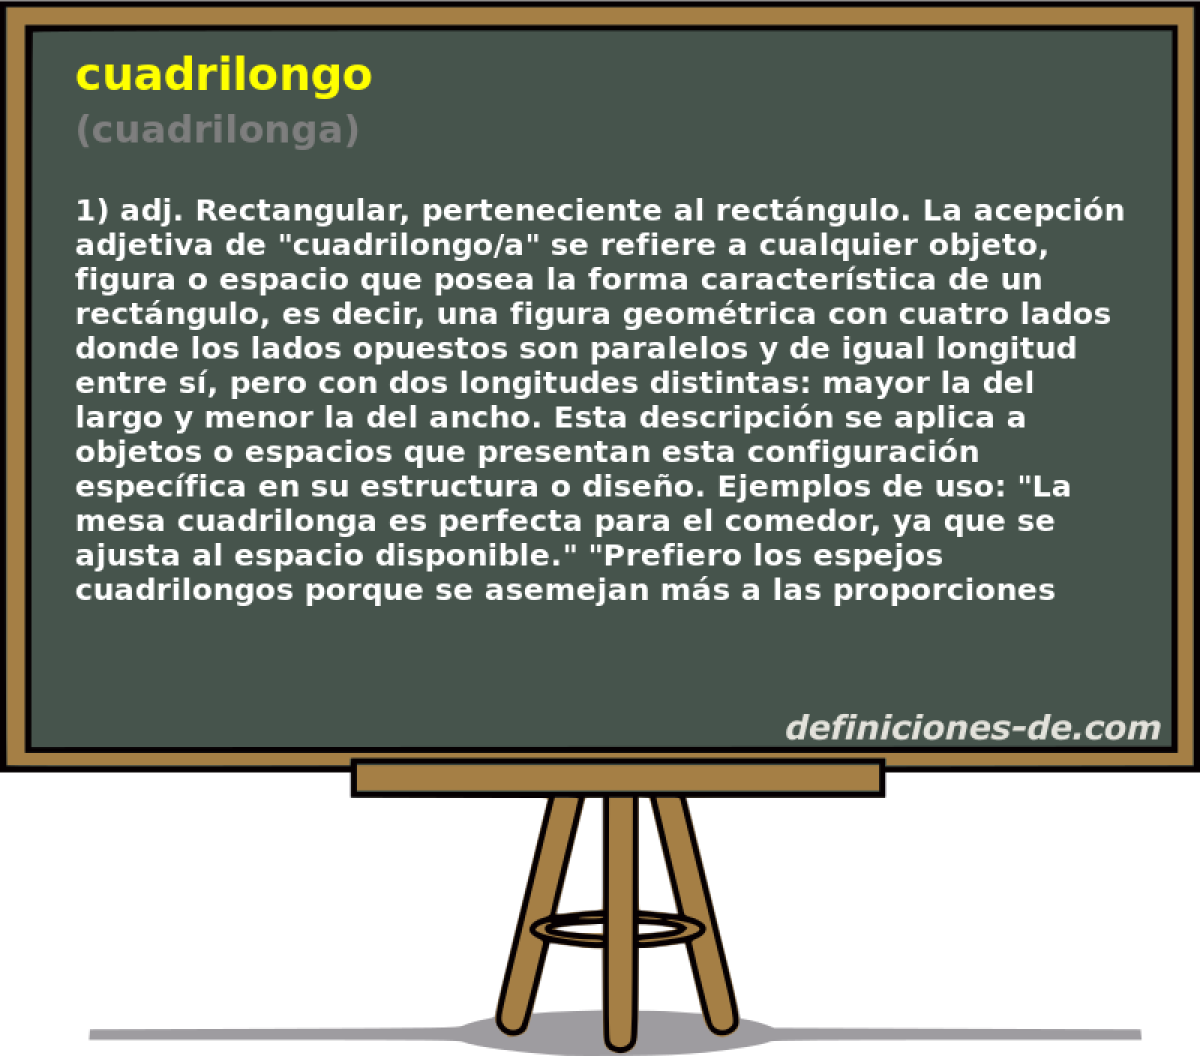 cuadrilongo (cuadrilonga)